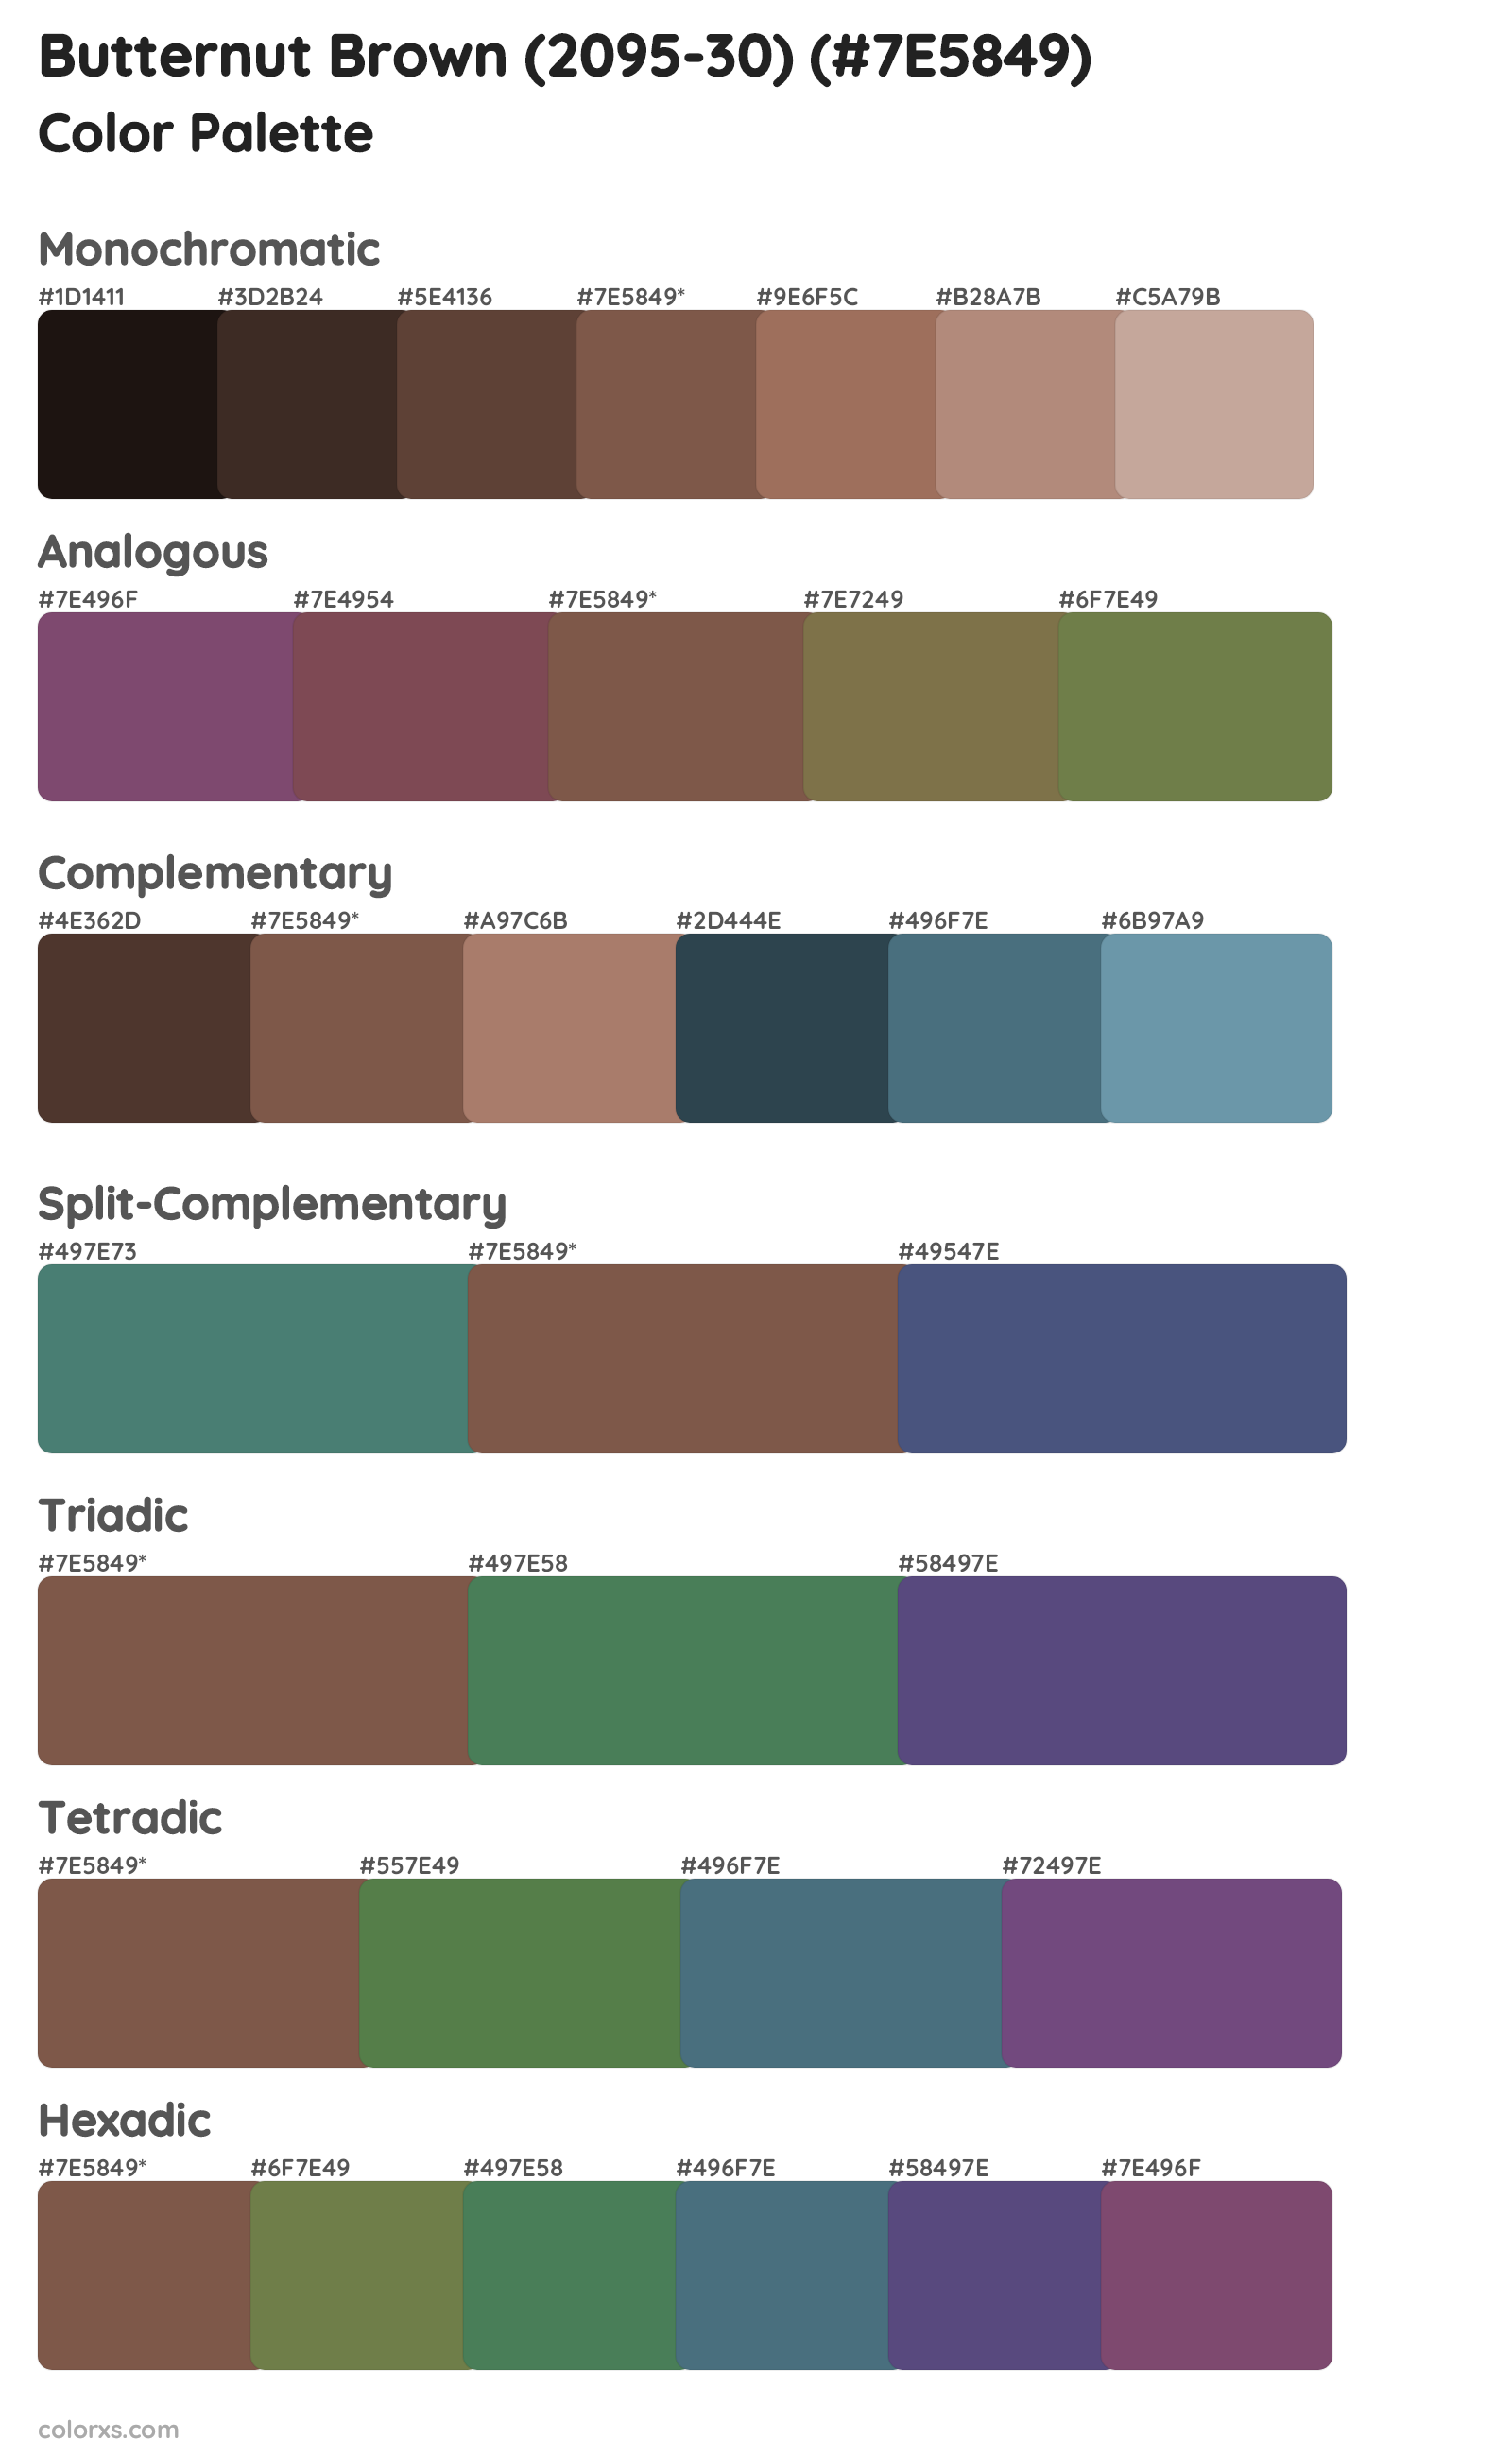 Butternut Brown (2095-30) Color Scheme Palettes